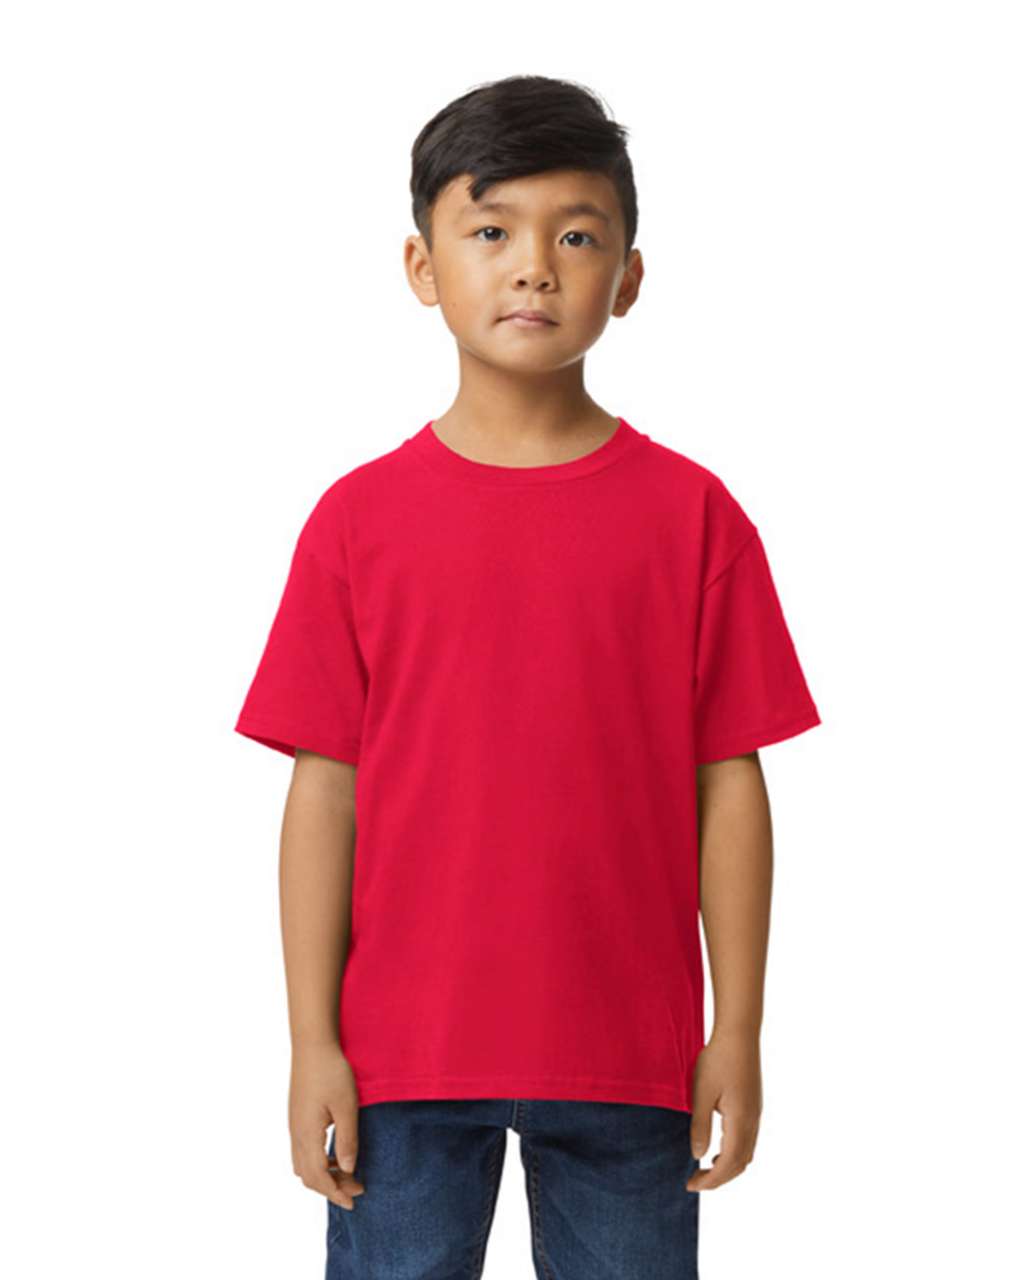 Majica, KR, dječja, 183gr, crvena, XL